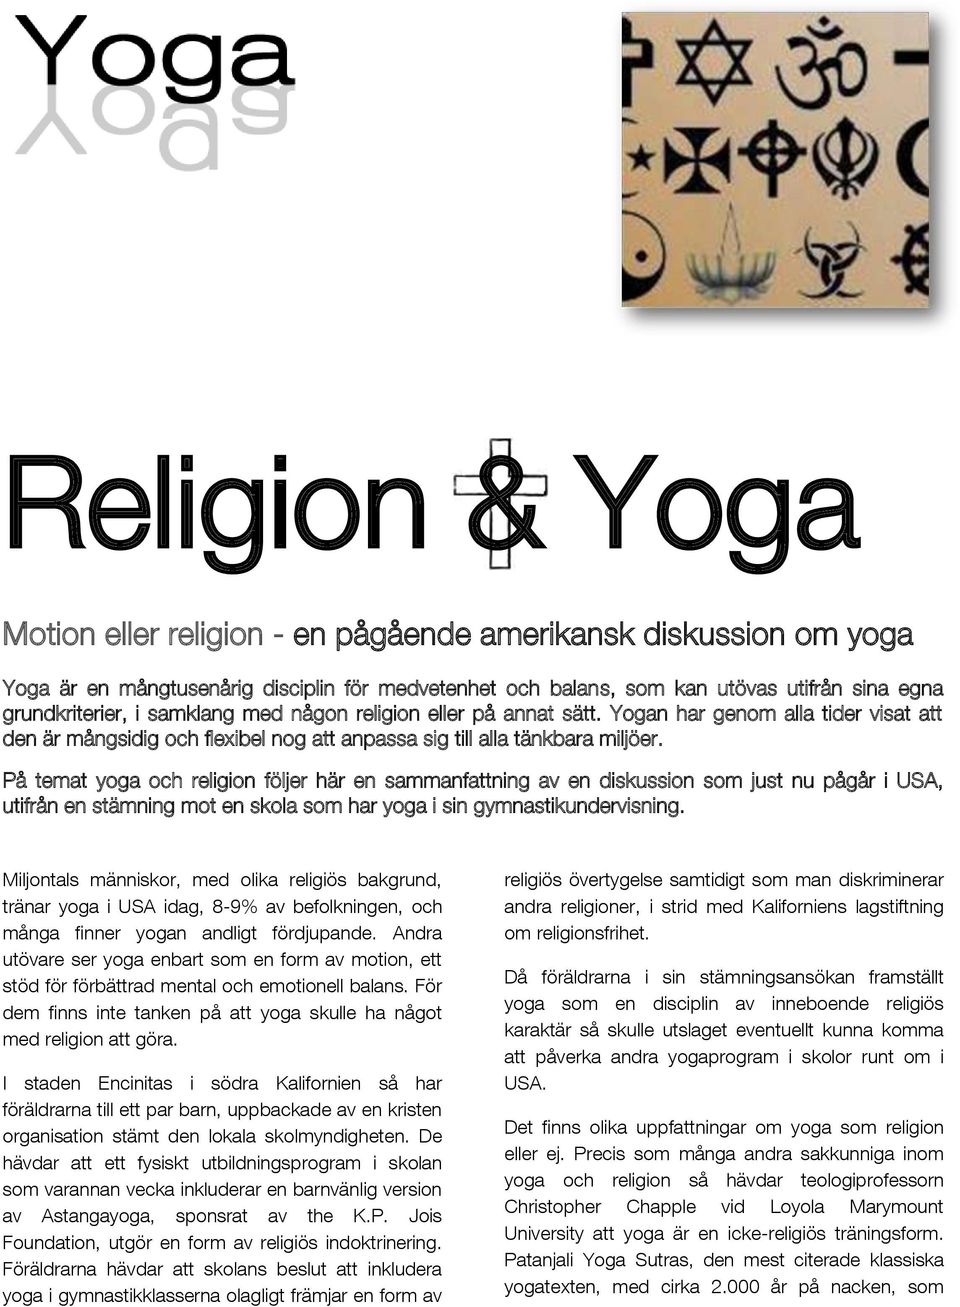 På temat yoga och religion följer här en sammanfattning av en diskussion som just nu pågår i USA, utifrån en stämning mot en skola som har yoga i sin gymnastikundervisning.